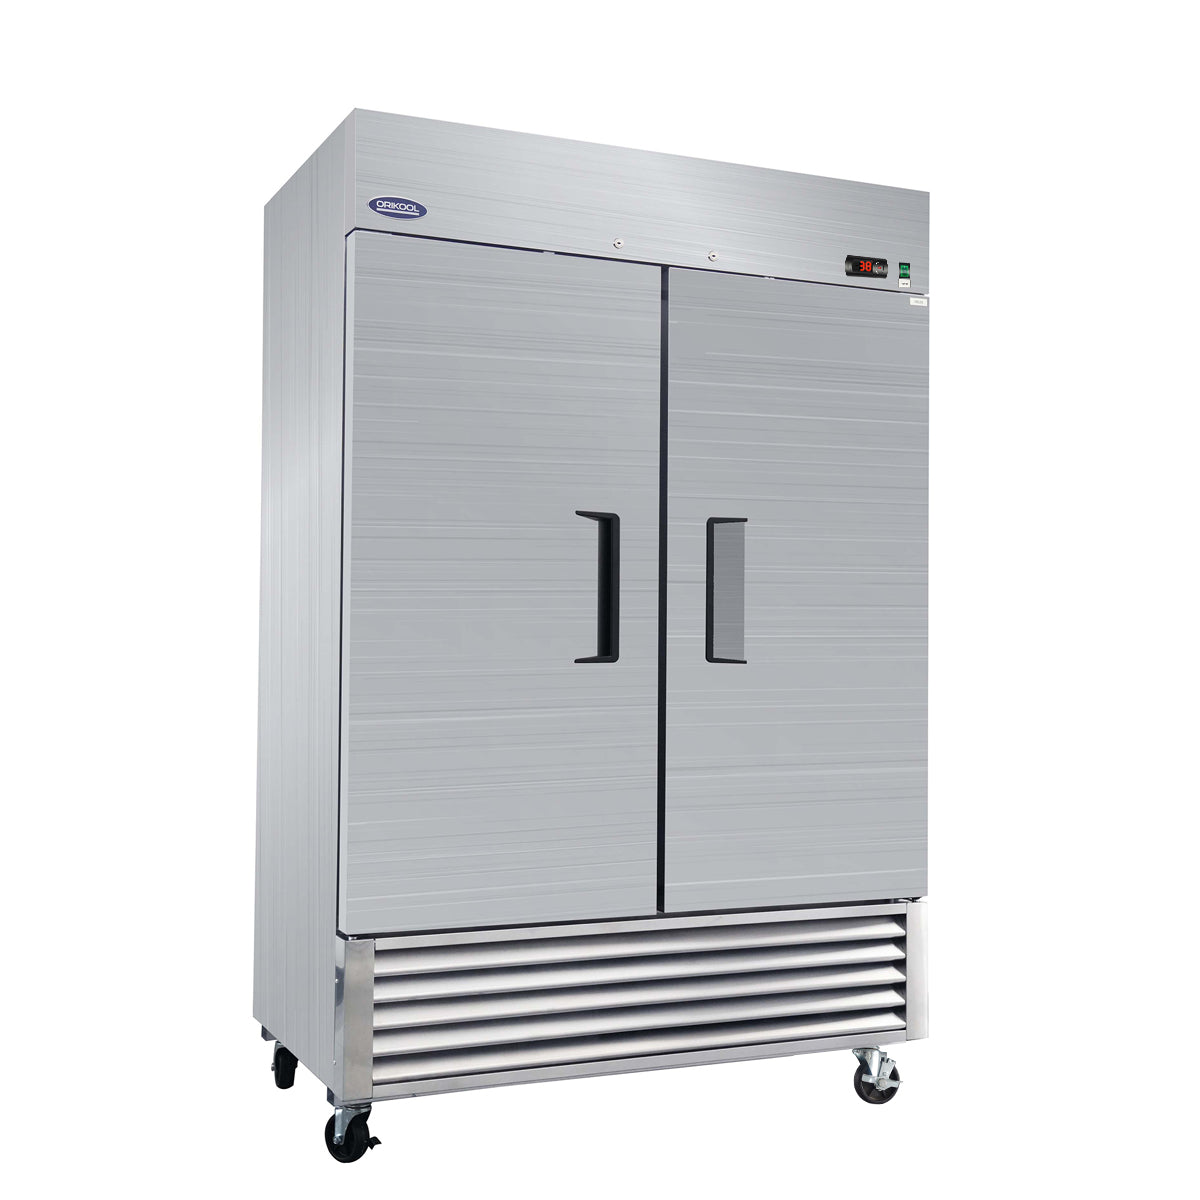 ORIKOOL 54" Solid Door Reach-In Commercial Refrigerator 49 cu.ft. ST54BR